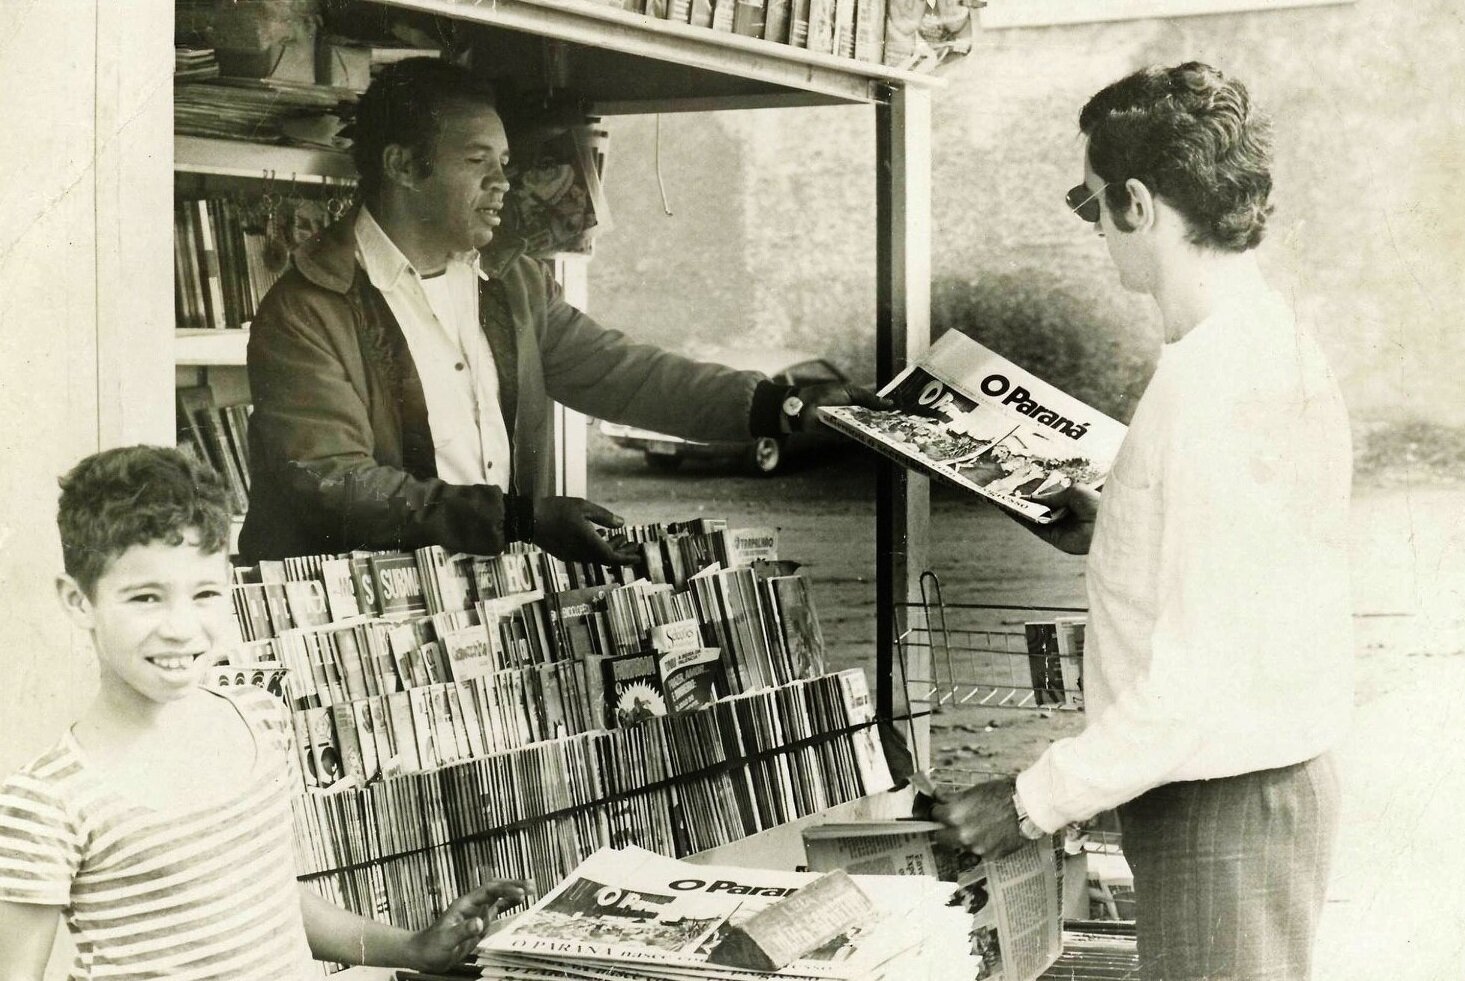 ‘Waltão’ da banca de jornais - Década de 1970